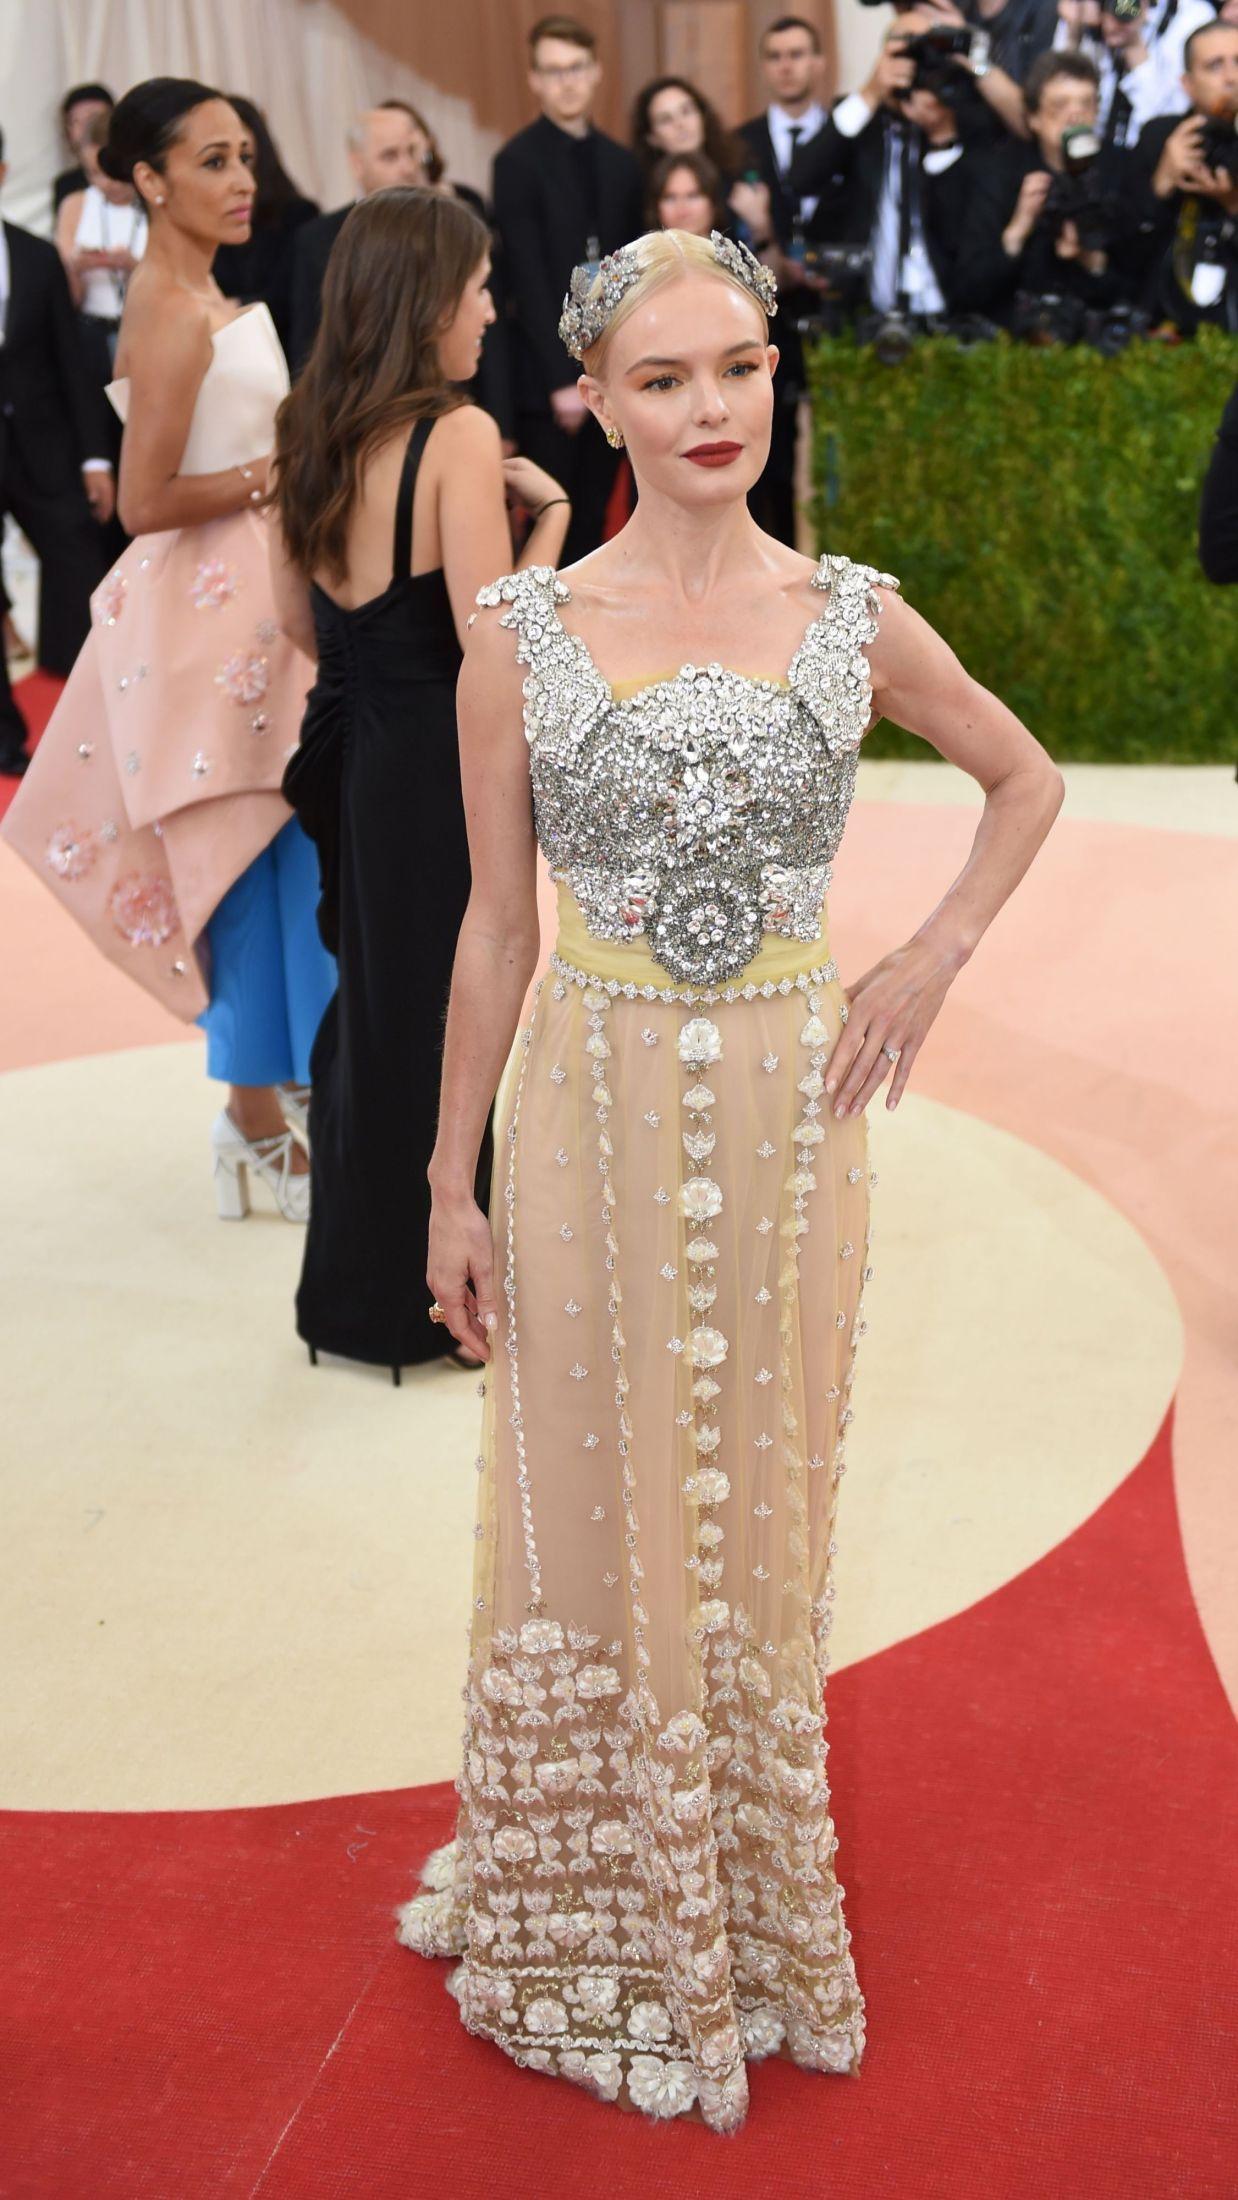 GLITRET: Kate Bosworth var kledd i en kjole fra Dolce & Gabbana med stenbelagt overdel og blomsterskjørt. Legg også merke til den romersk-inspirerte kronen i håret. Bosworth stylet antrekket med trendy matt leppestift.